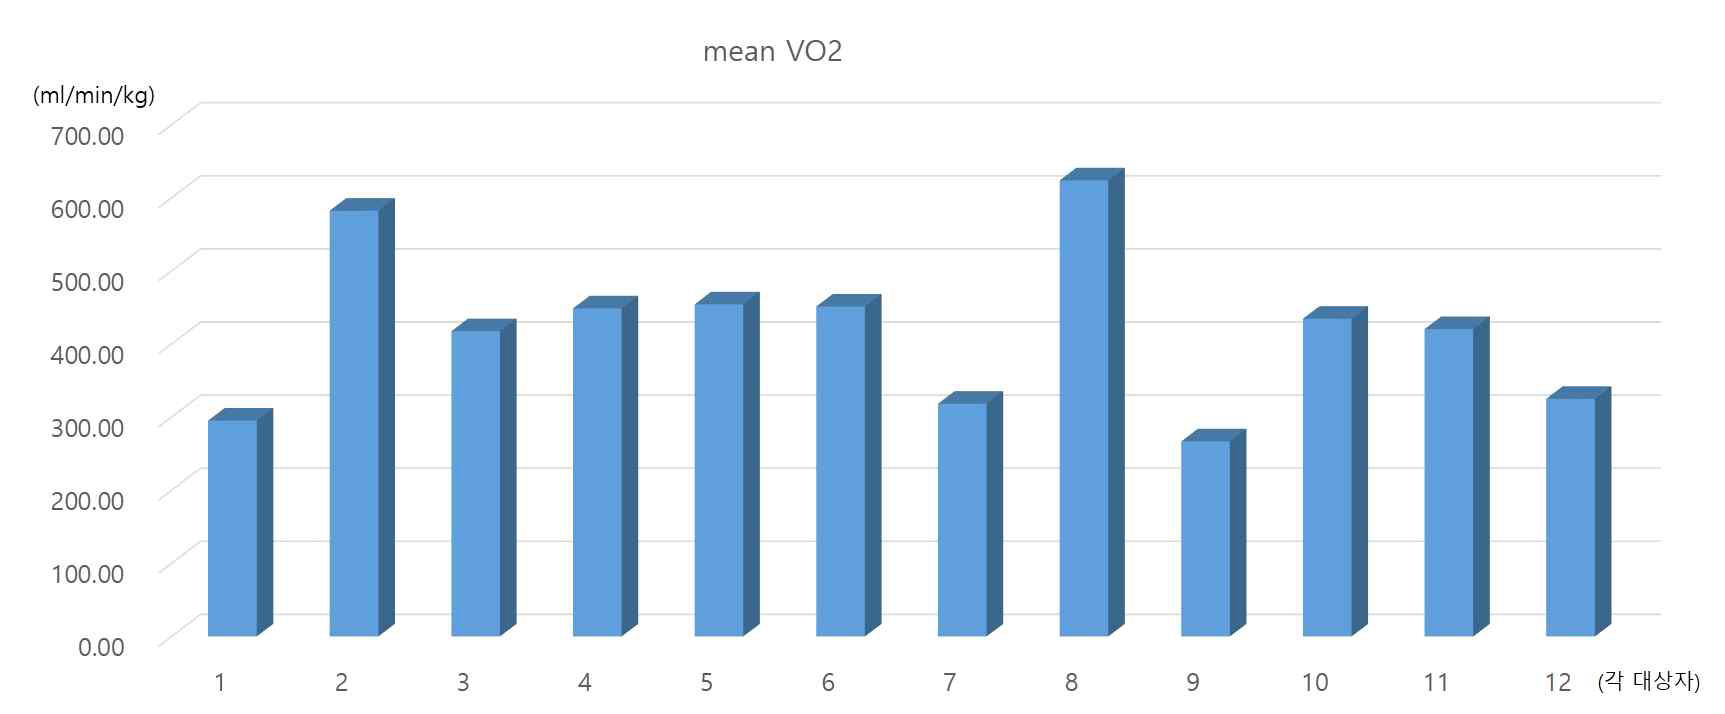 각 대상자 별 평균 VO2 산출